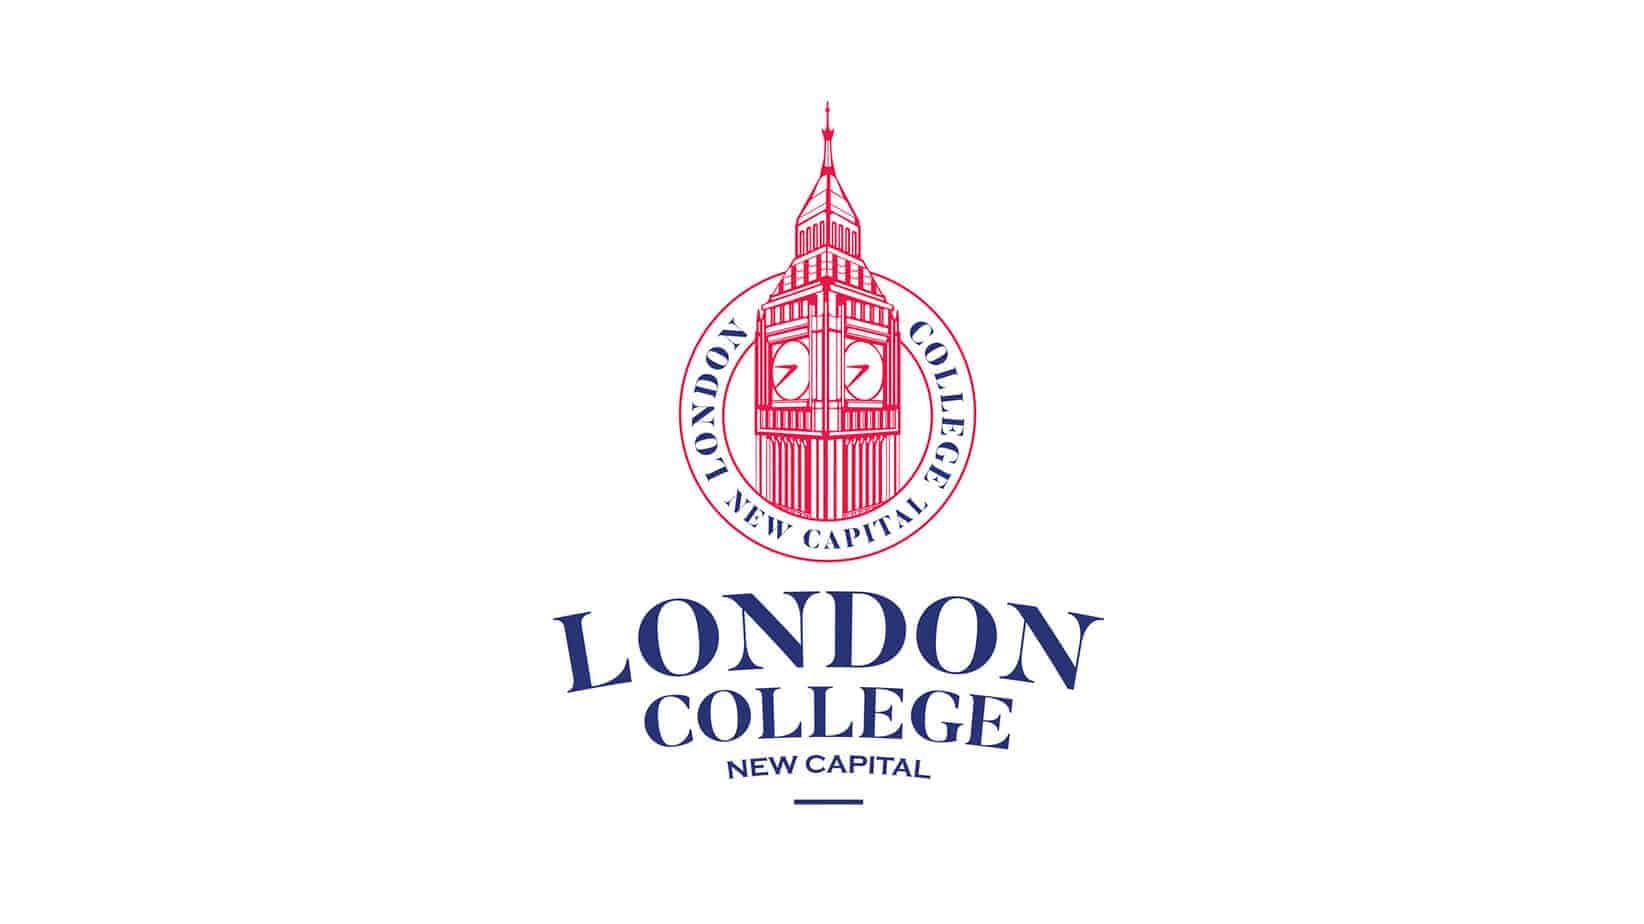 مدرسة لندن كوليدج - London College